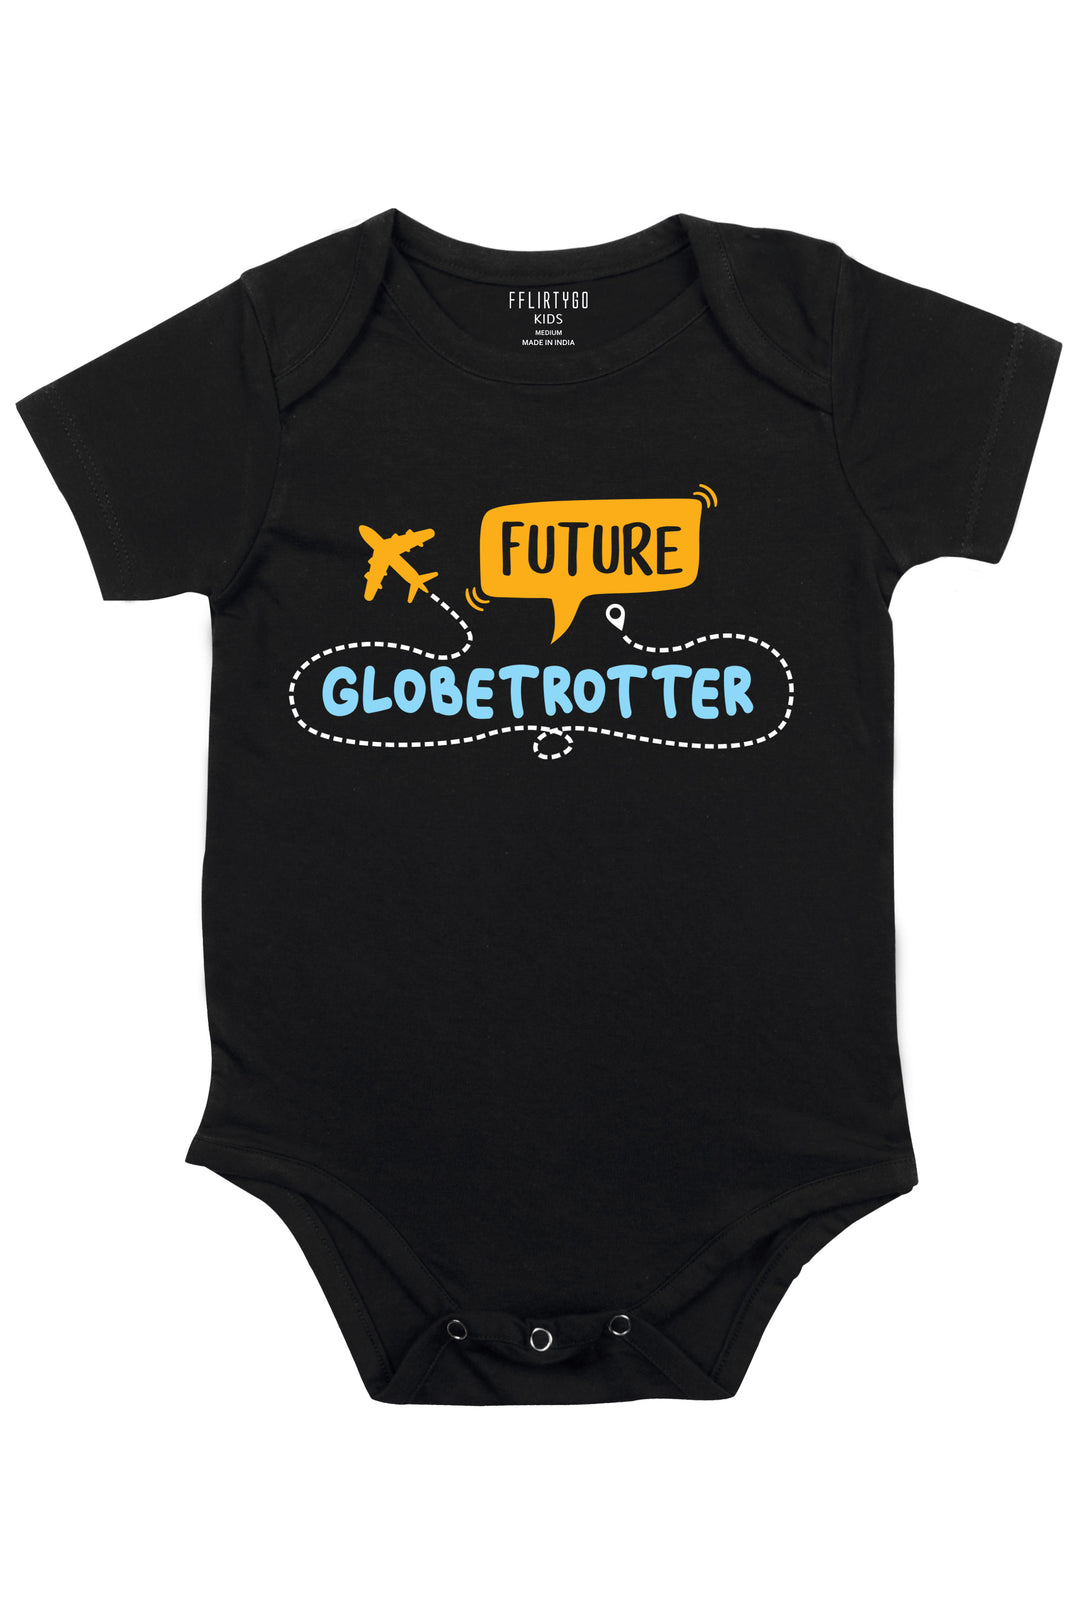 Future Globetrotter - FflirtyGo